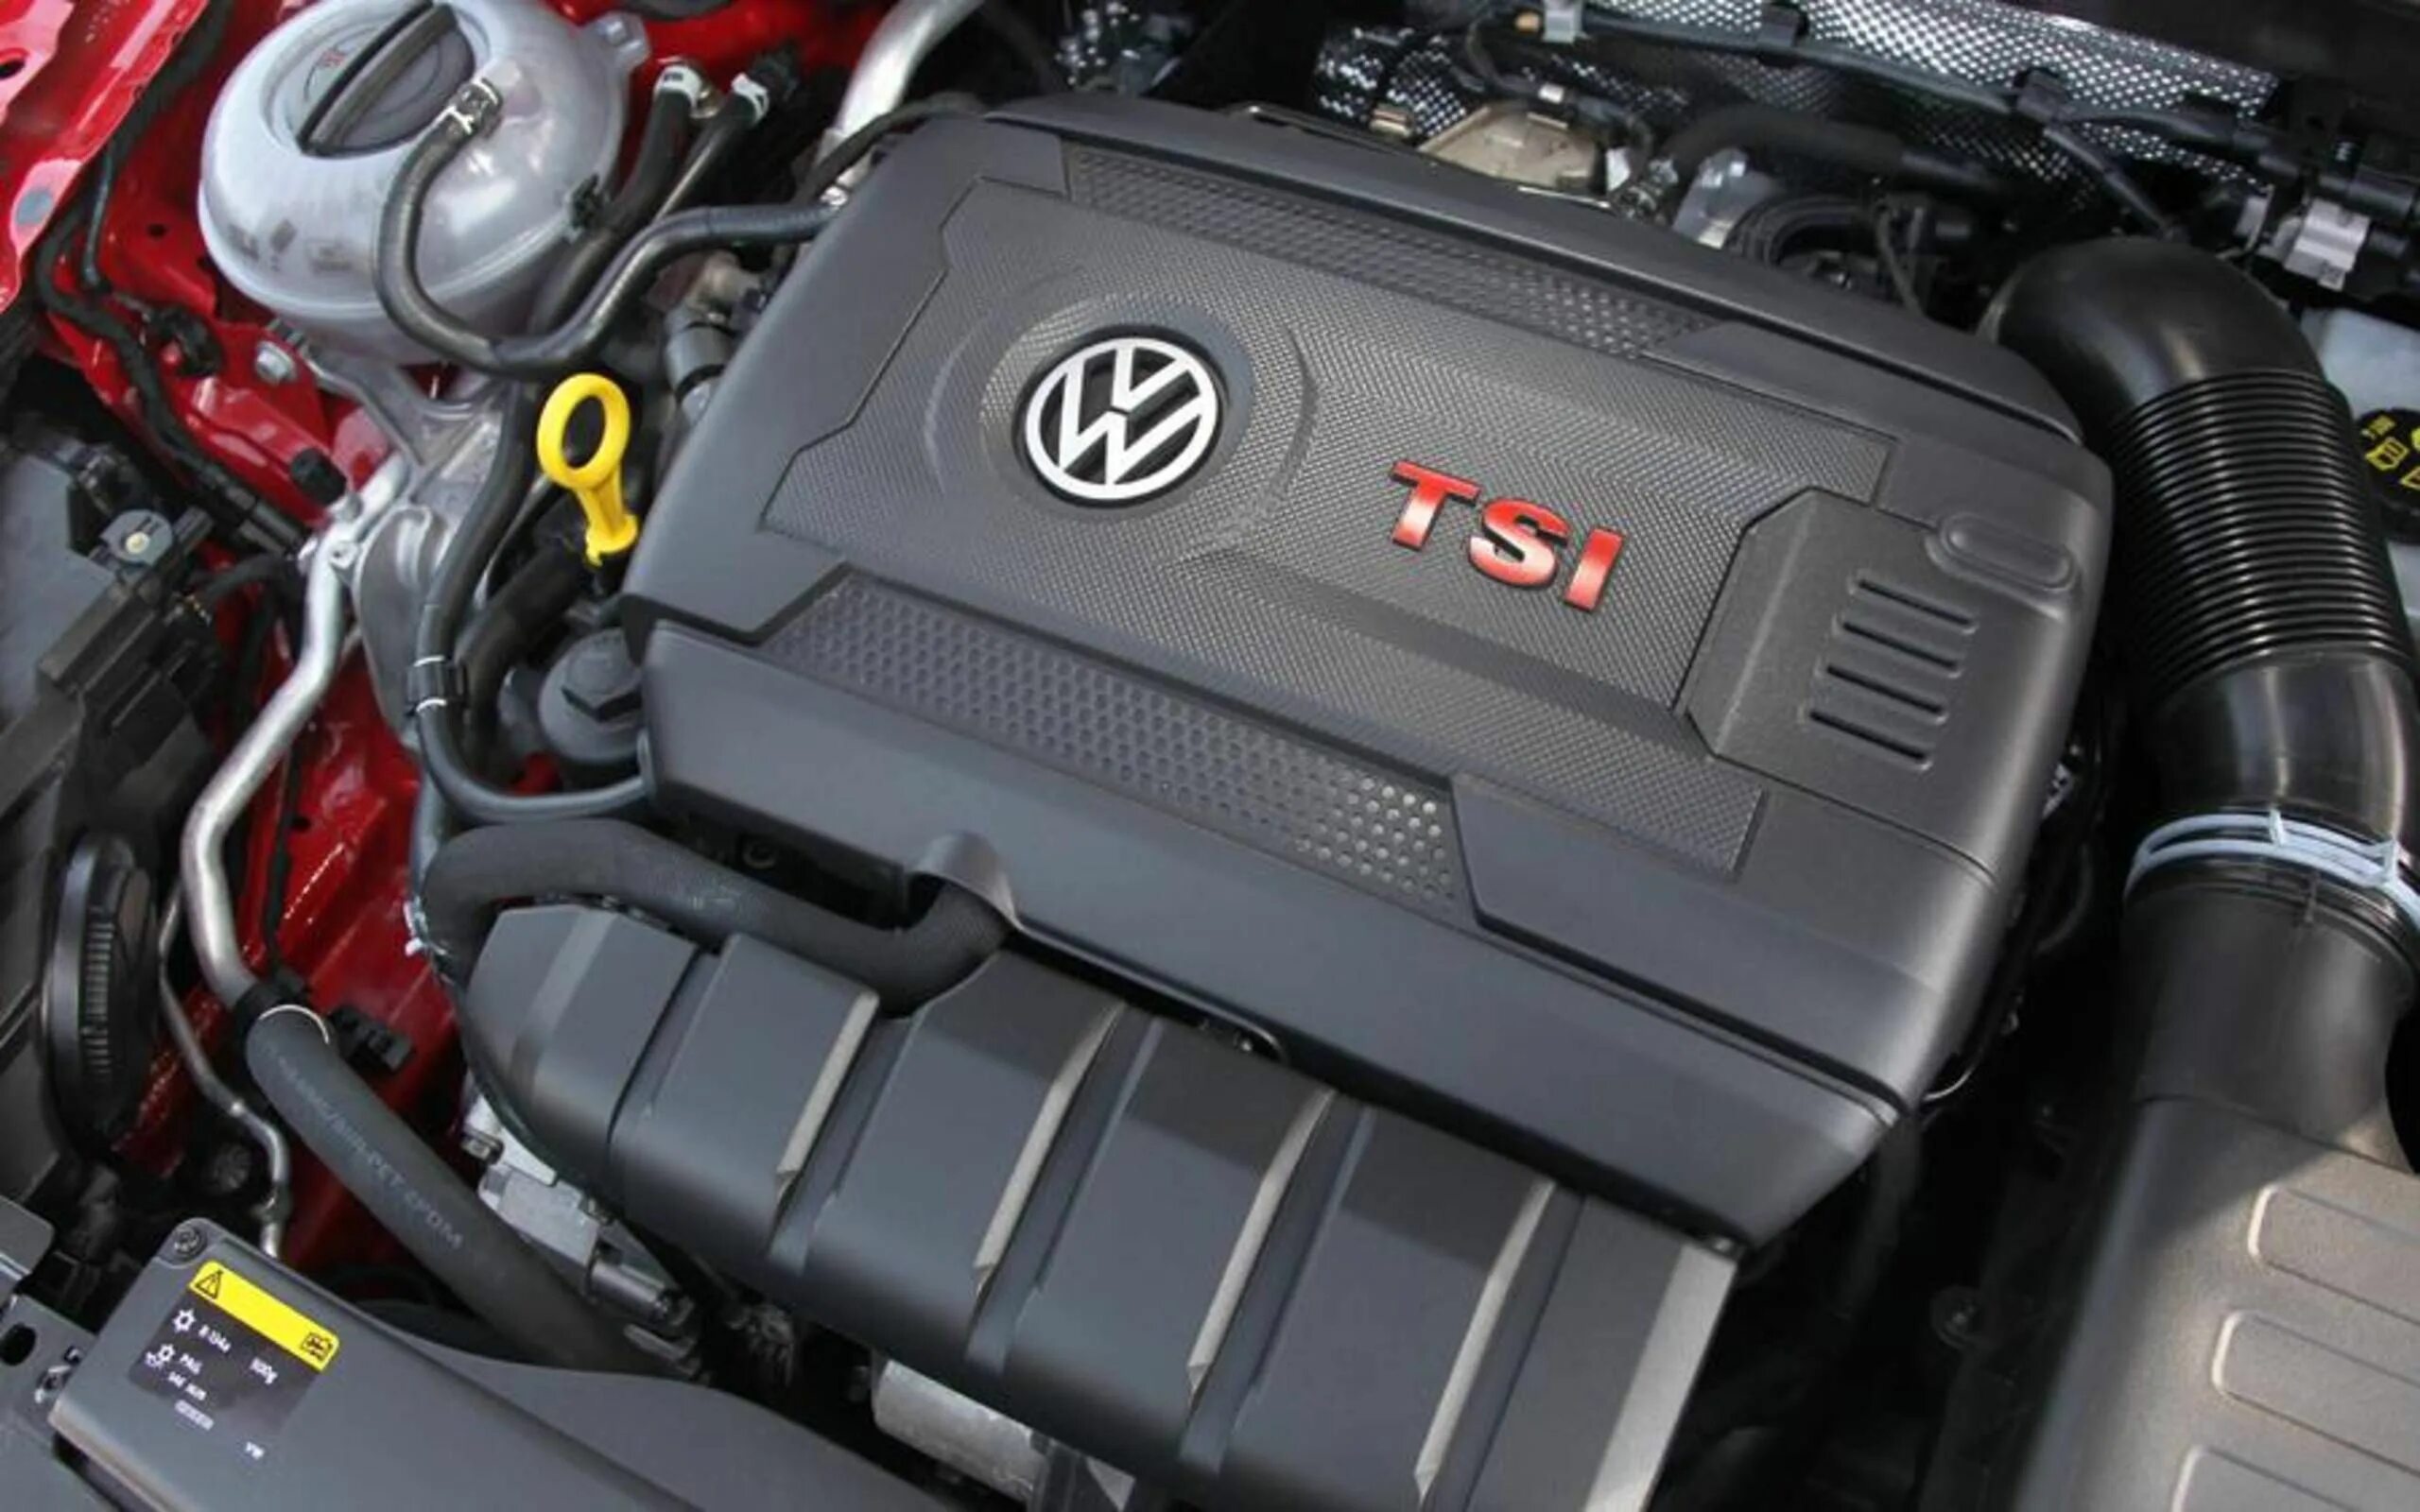 Двигатель Volkswagen TSI 2.0. Двигатель Volkswagen Tiguan 2.0 TSI. Volkswagen Golf 6 1.2 TSI. Фольксваген Тигуан двигатель ТСИ. Двигатель на автомобиль volkswagen